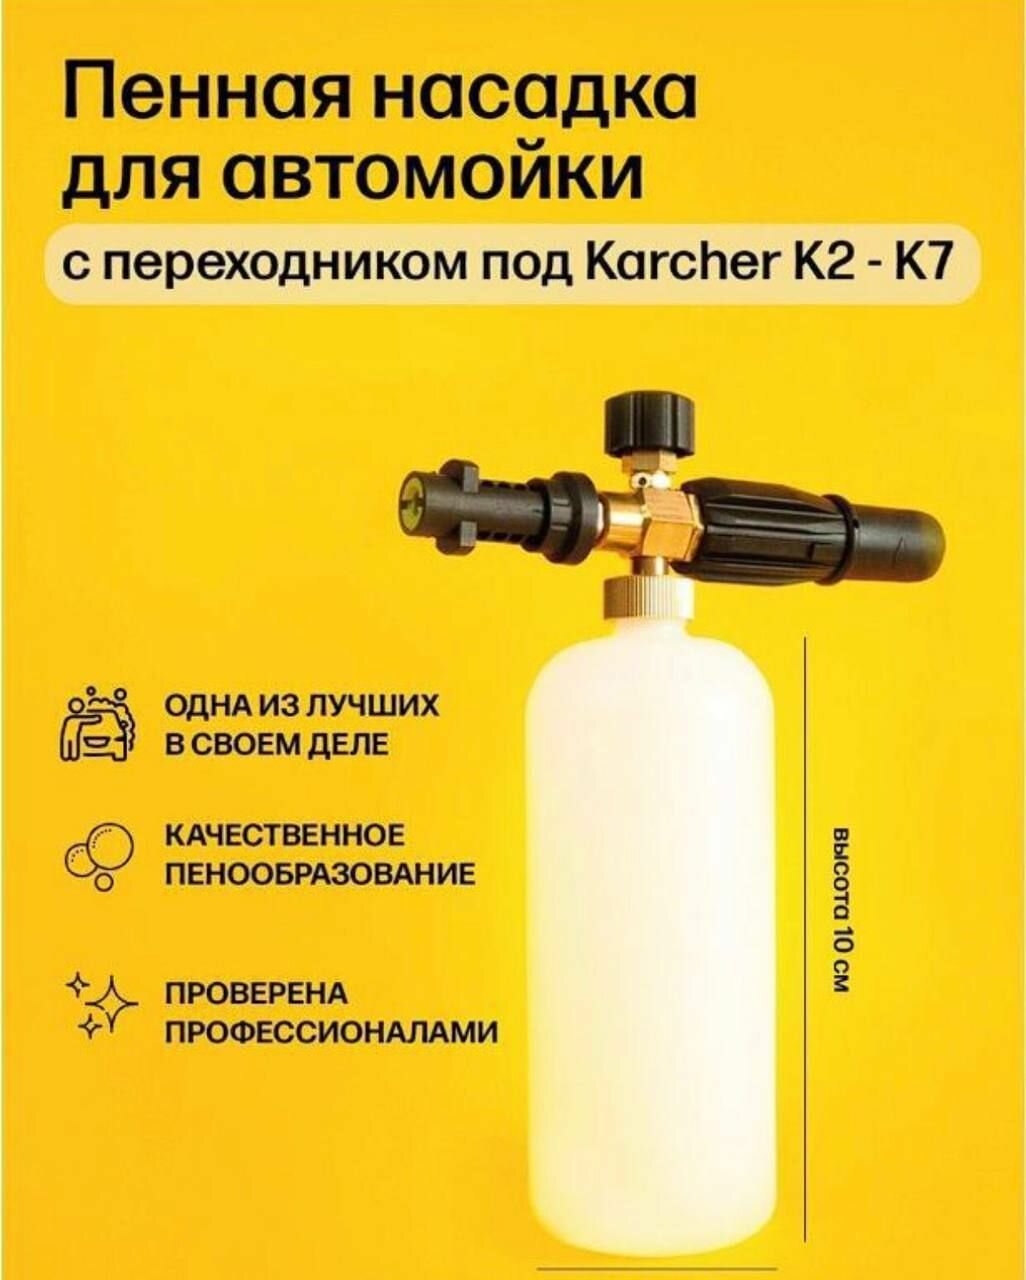 Пенная насадка (пеногенератор) для моек высокого давления Karcher (Керхер) (Совместимость: Karcher серии K2, K3, K4, K5, K6, K7)